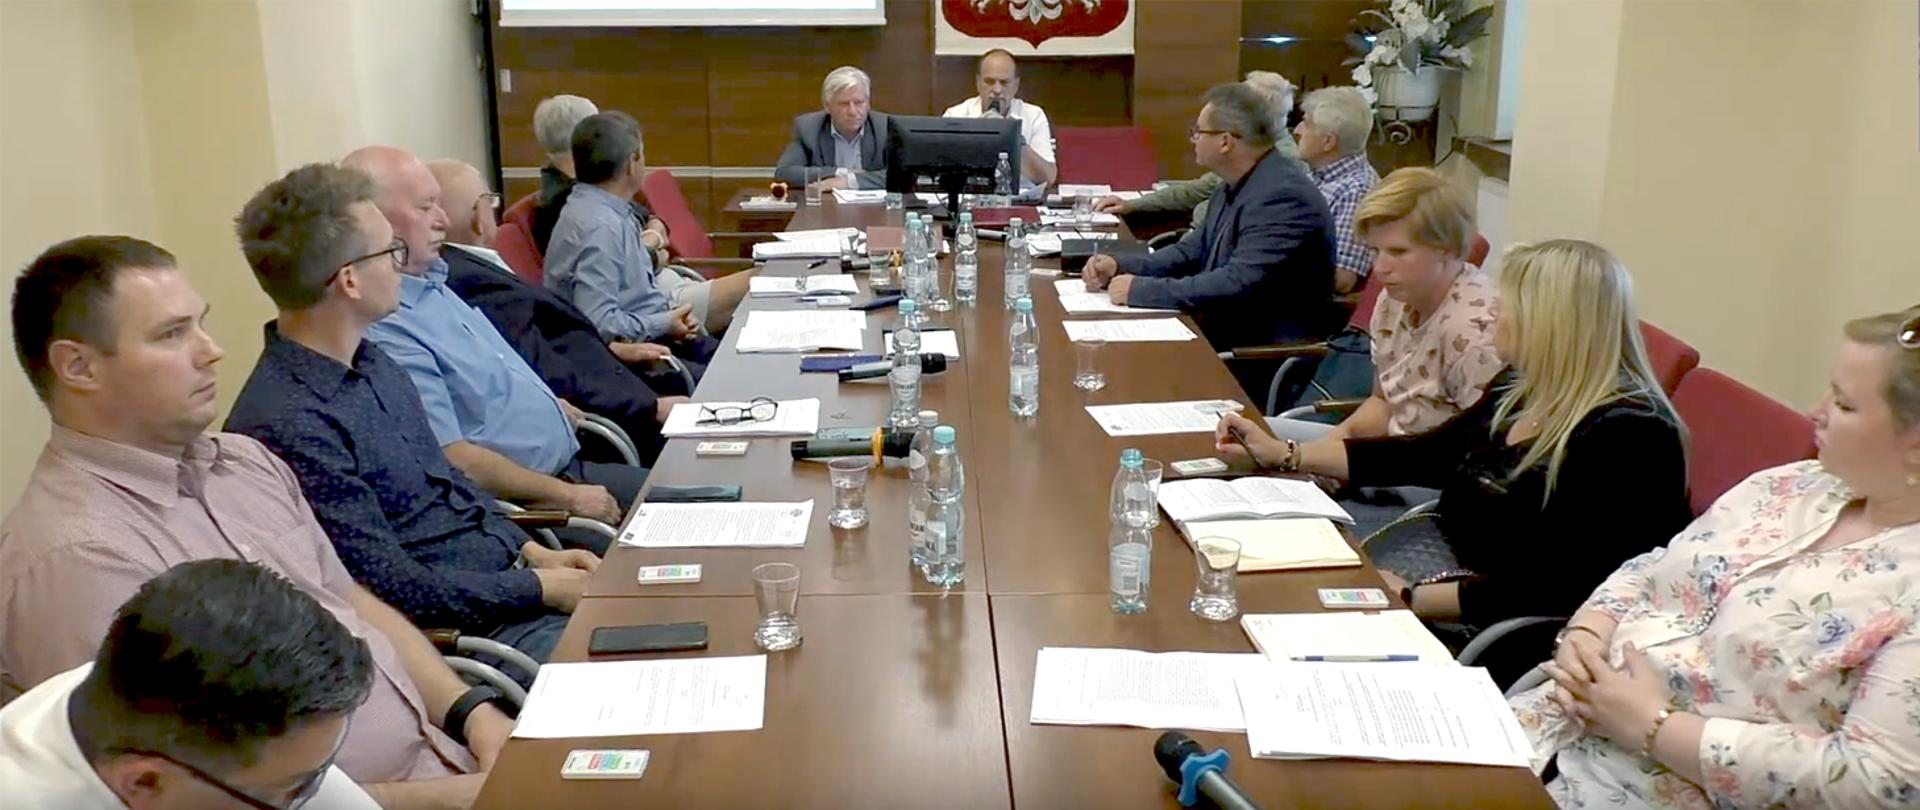 Radni Rady Gminy Kobiór wraz z Wójtem i pracownikami gminy siedzą obradują przy stole. 